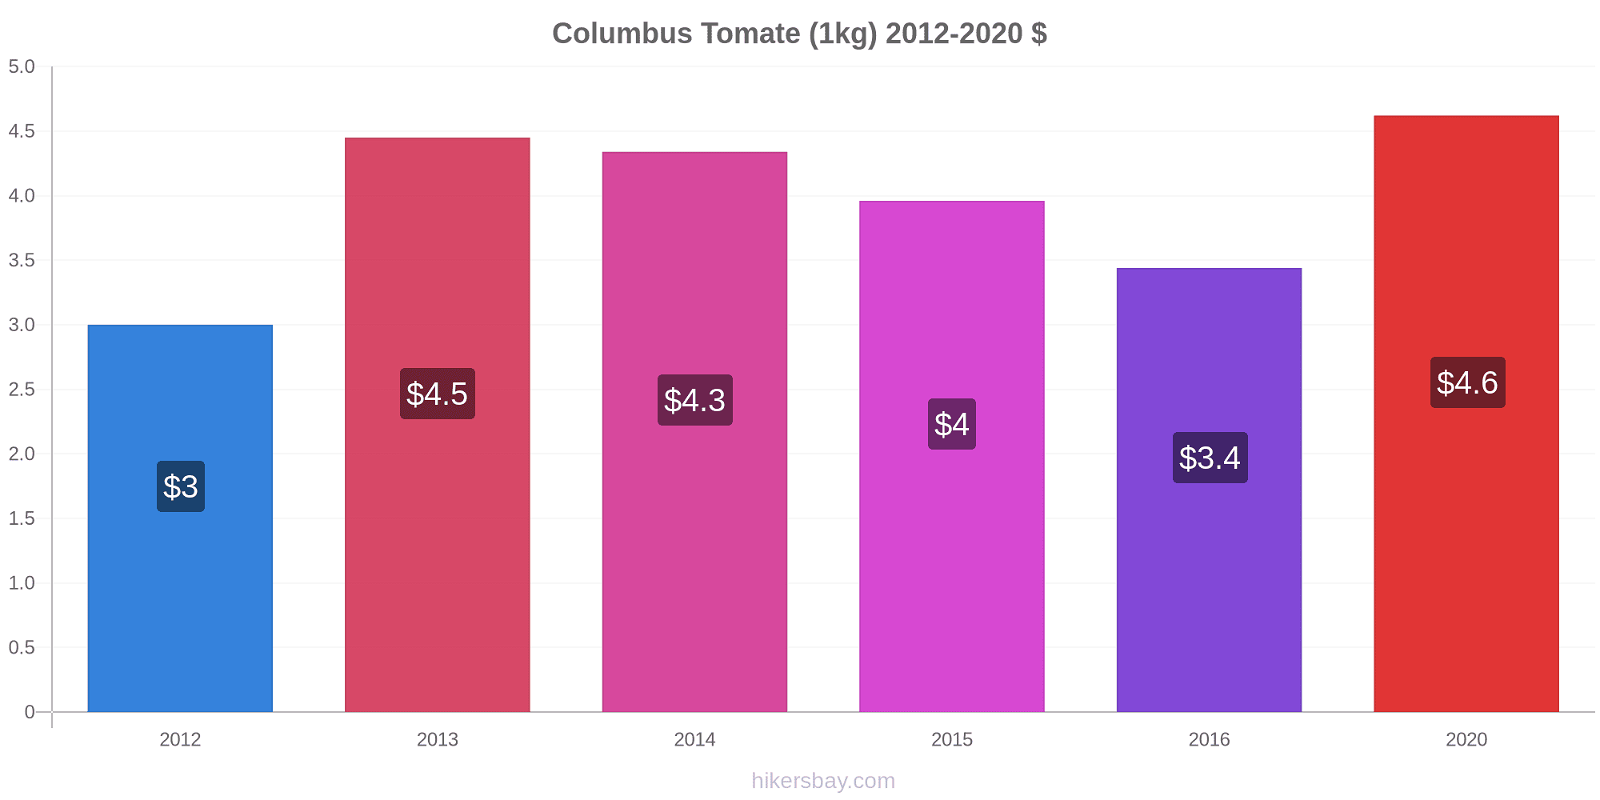 Columbus cambios de precios Tomate (1kg) hikersbay.com